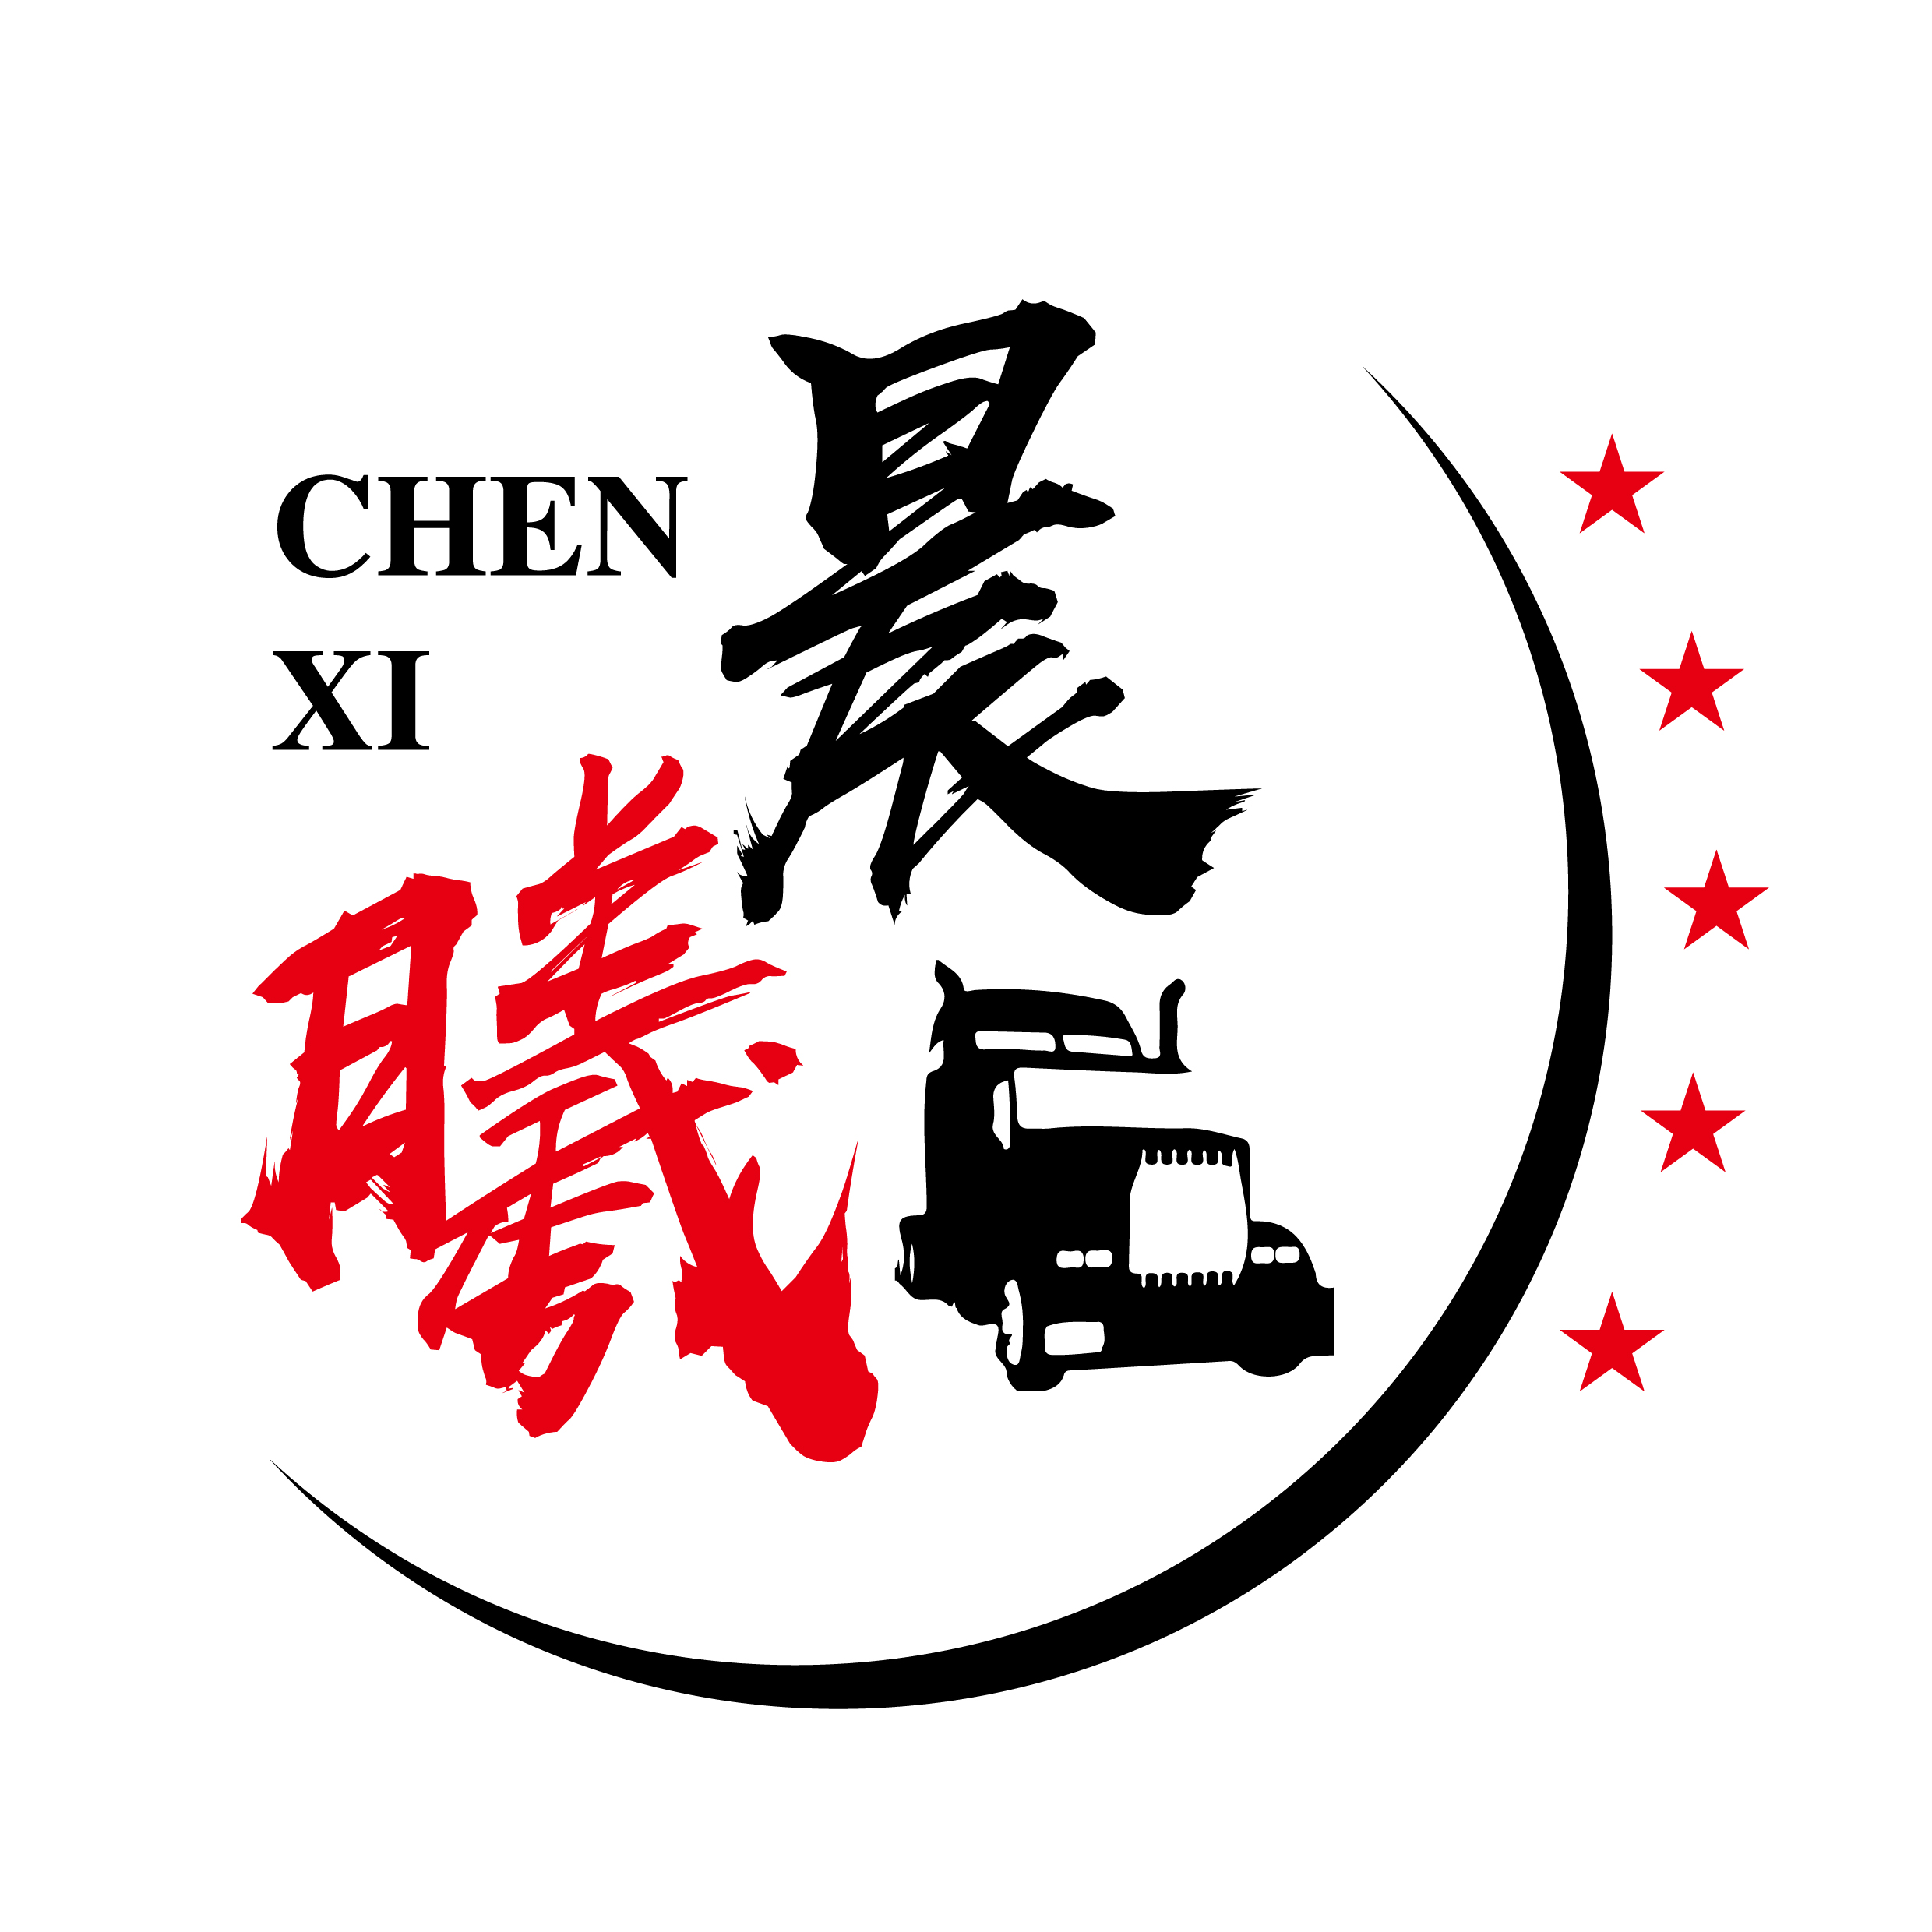 Chenxi VTC